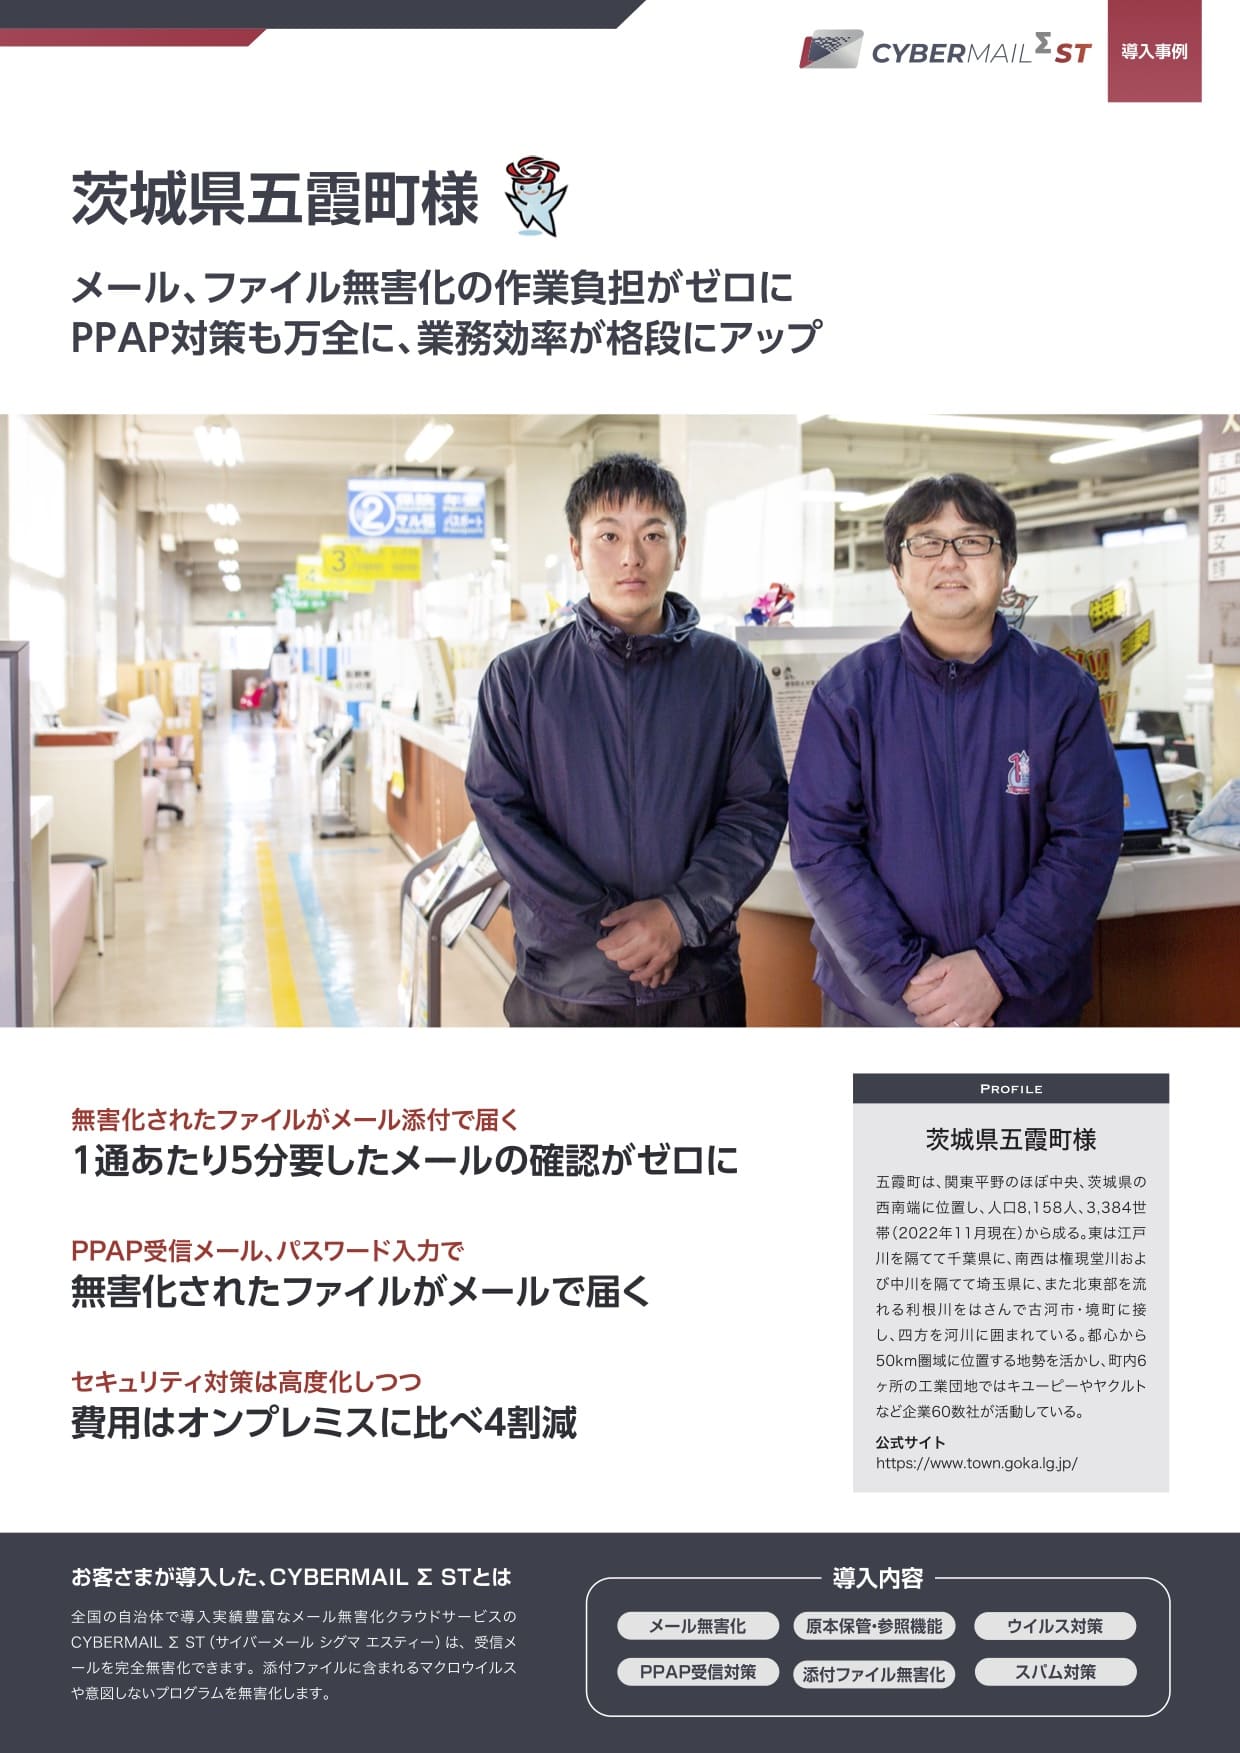 茨城県五霞町 - メール、ファイル無害化の作業負担がゼロに、PPAP対策も万全に、業務効率が格段にアップ